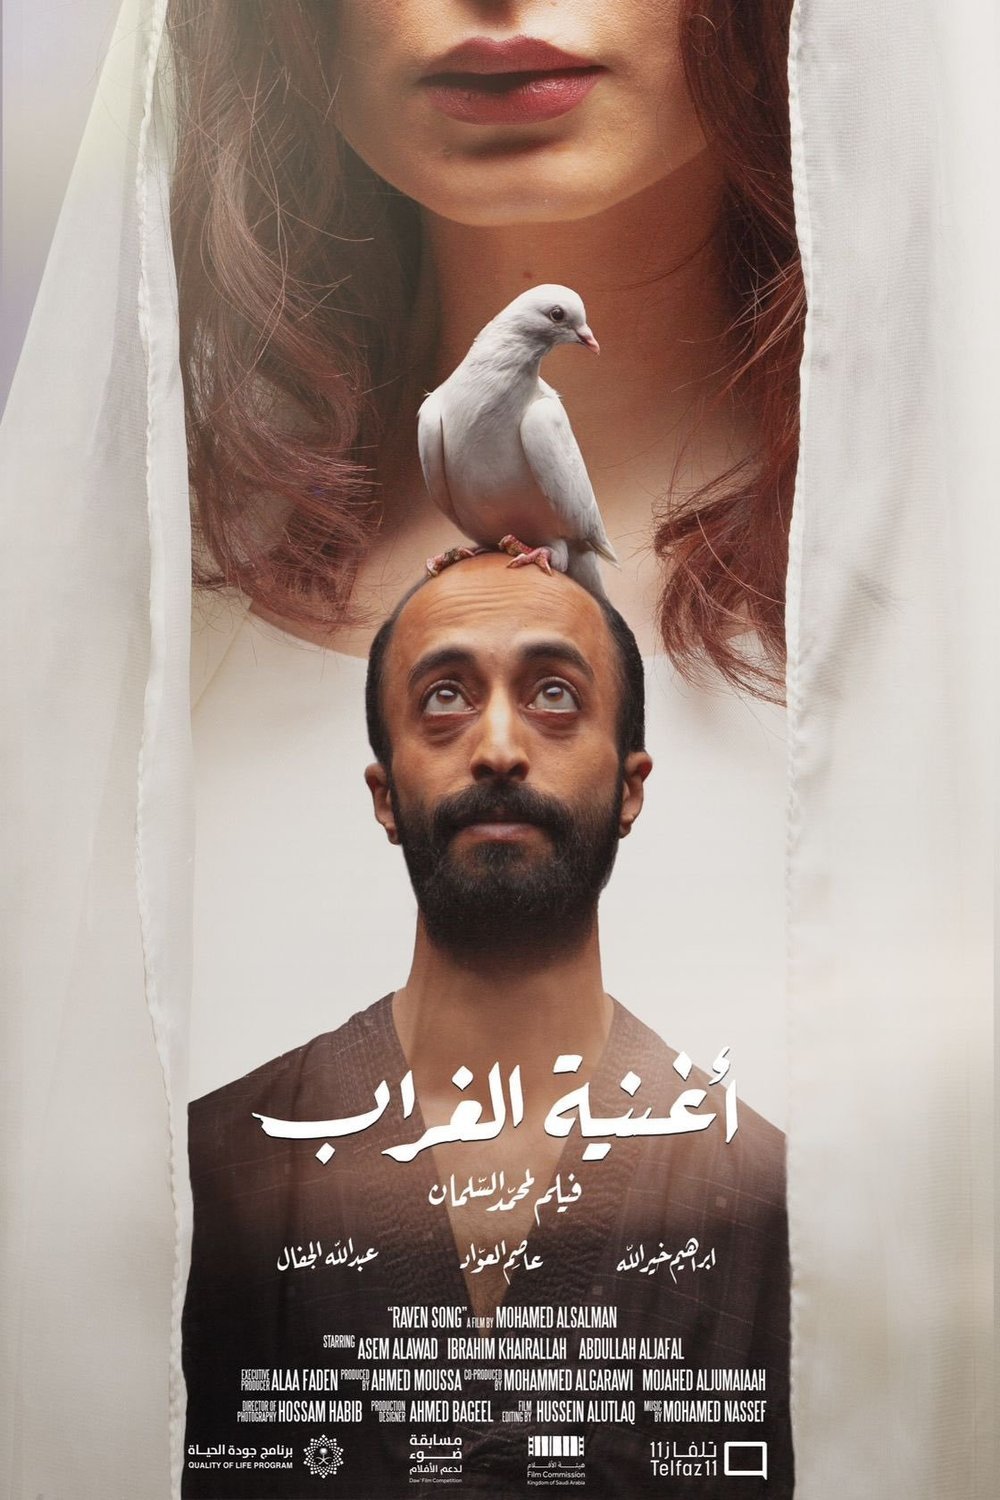 L'affiche originale du film Raven Song en arabe